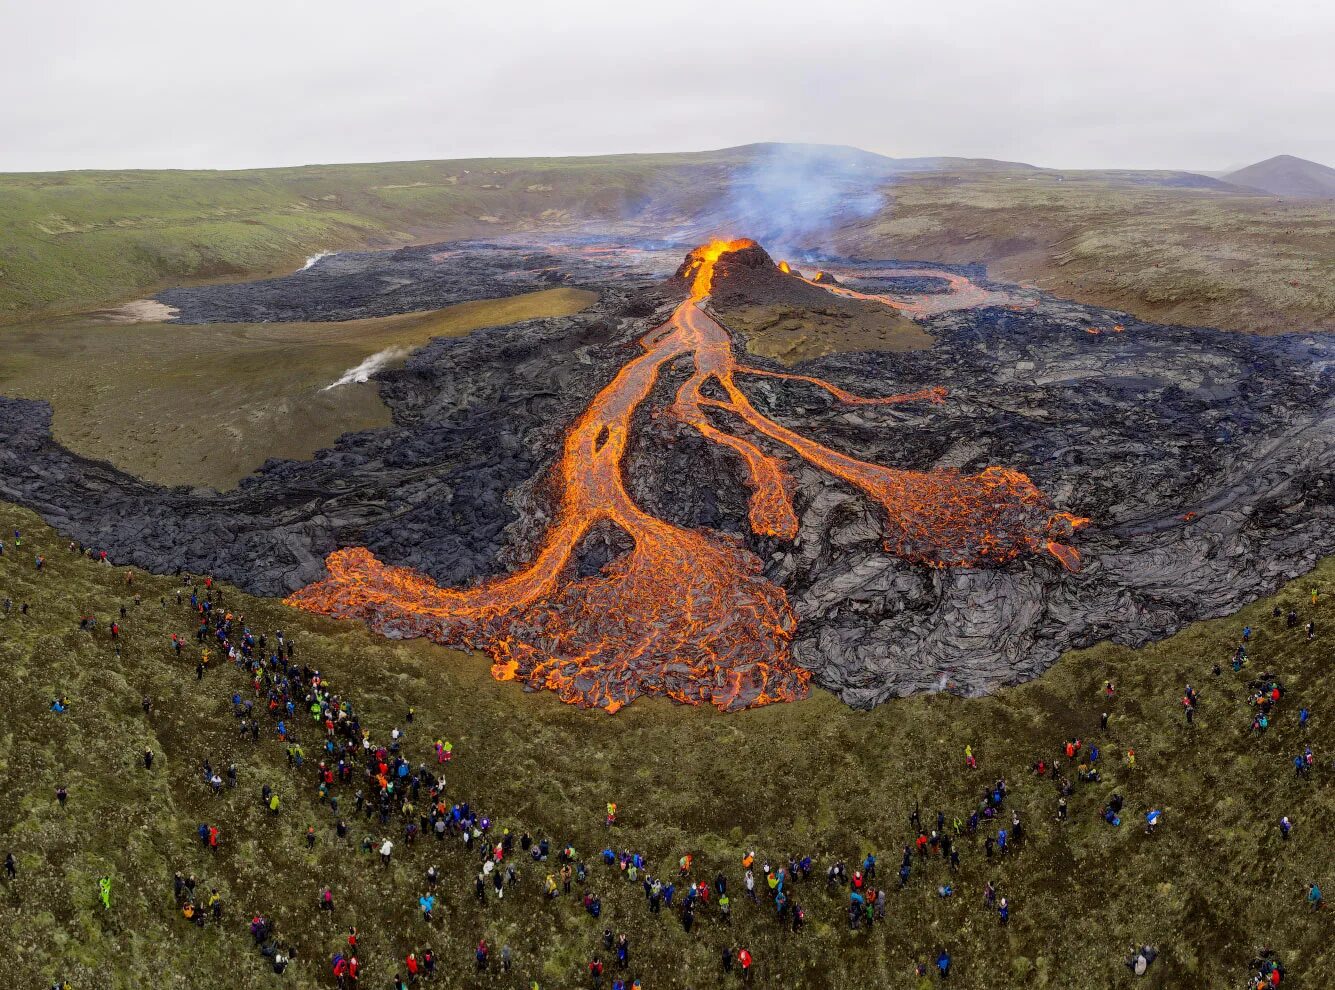 Извержение вулкана в Исландии 2021. Вулкан в Исландии фаградальсфьядль. Извержение вулкана фаградальсфьядль в Исландии. Извержение вулкана в Исландии Эйяфьятлайокудль. Вулкан начал извергаться